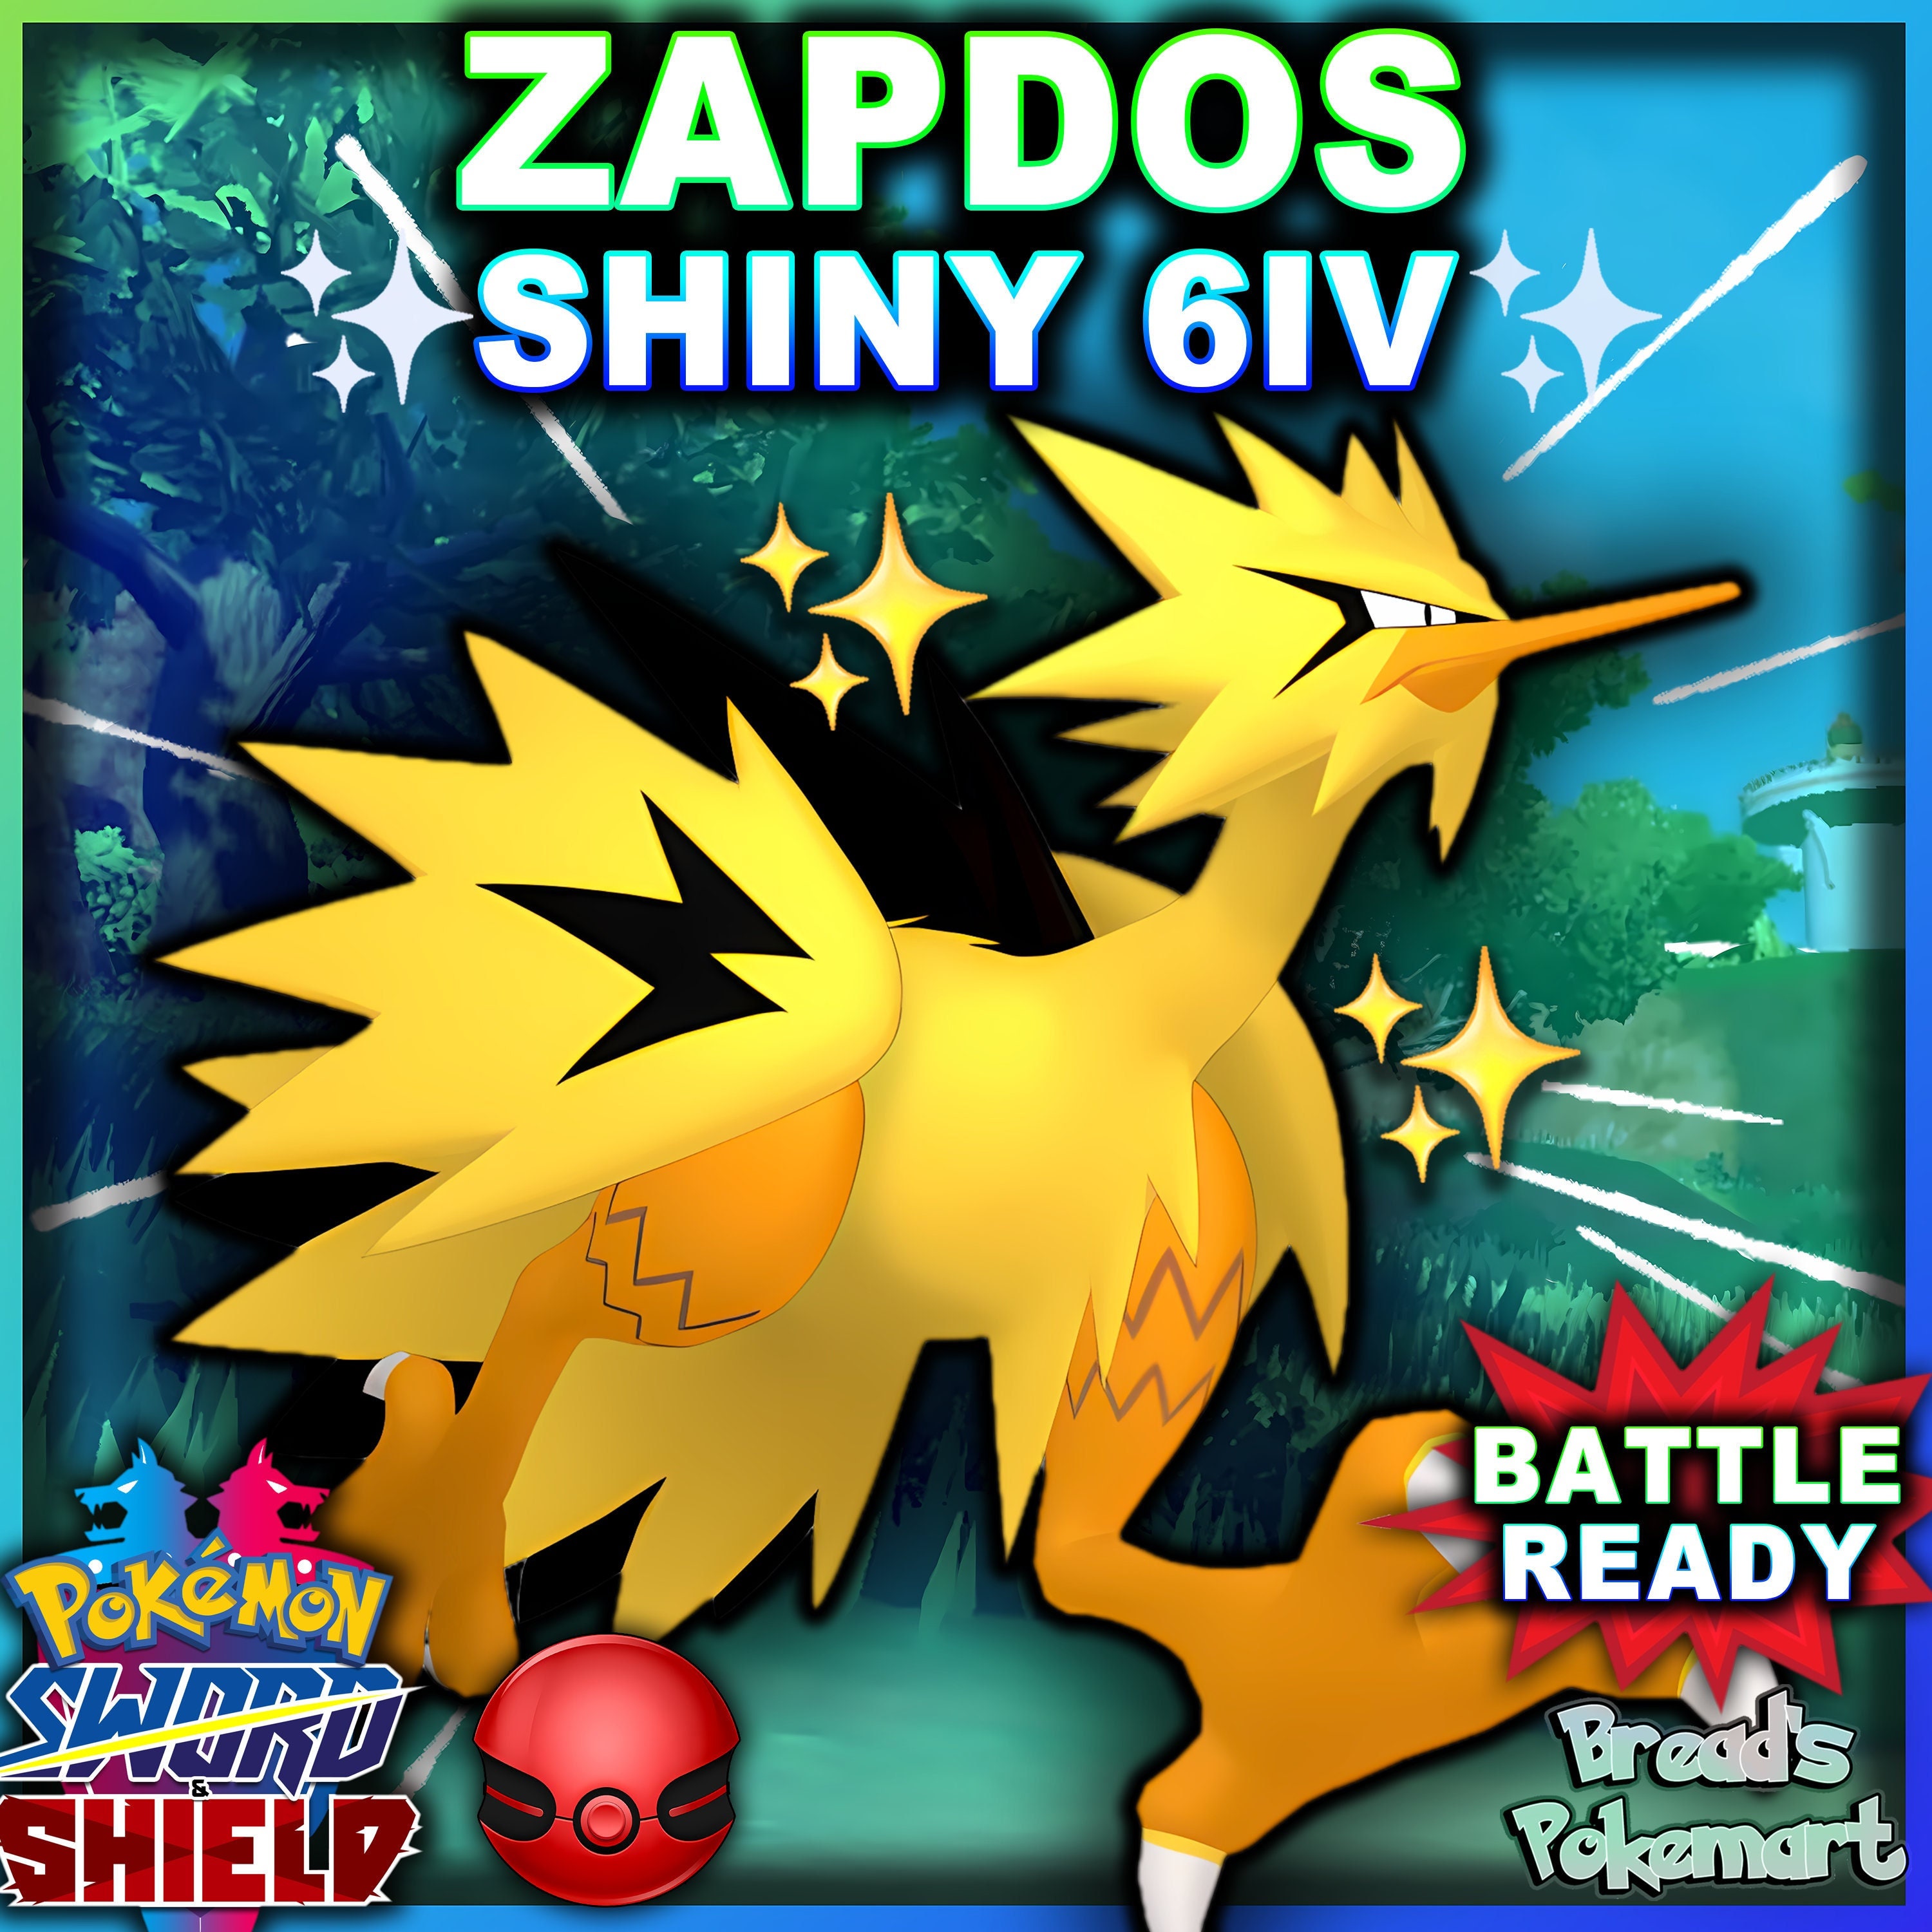 Shiny Articuno/zapdos/moltres Pack Bundle 6IV Pokemon X/Y 